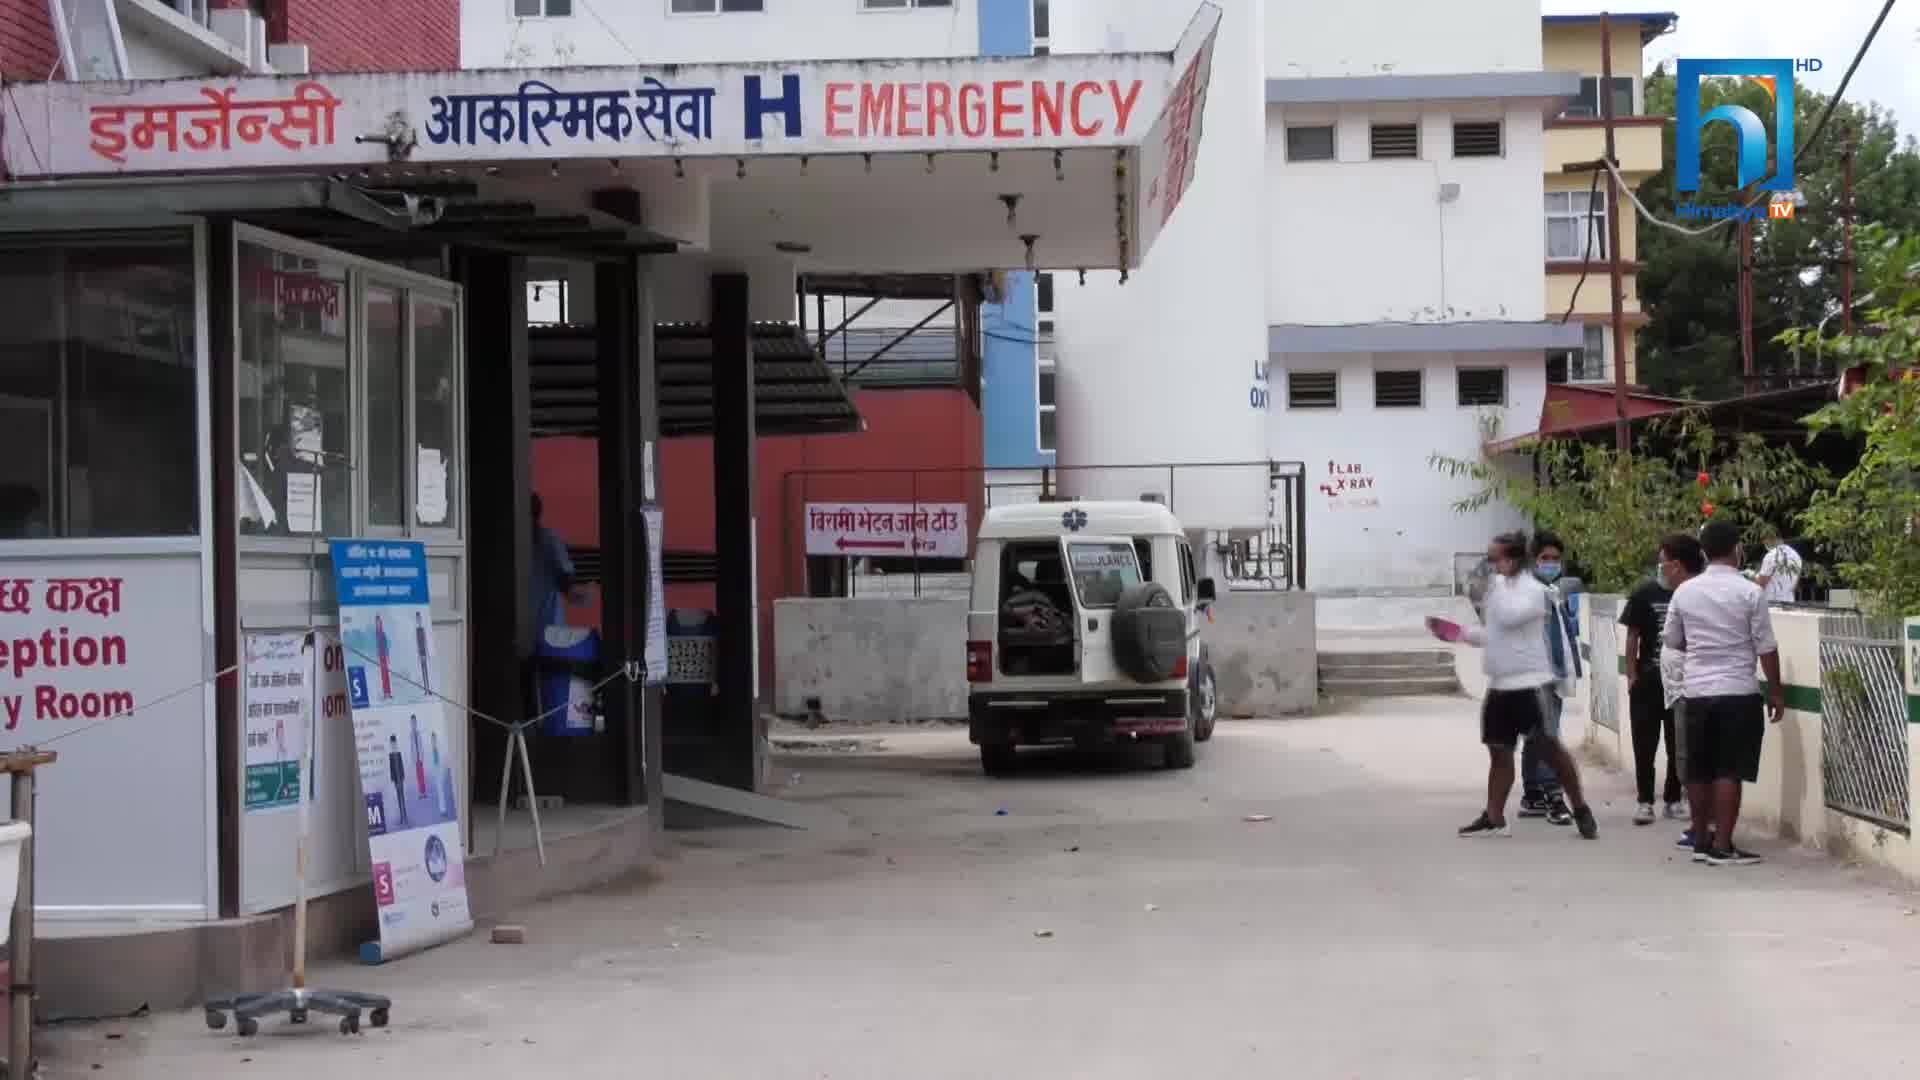 काठमाडौंका अस्पतालमै बिरामीको विजोग, भर्ना हुन चक्कर काट्न बाध्य (भिडियोसहित)